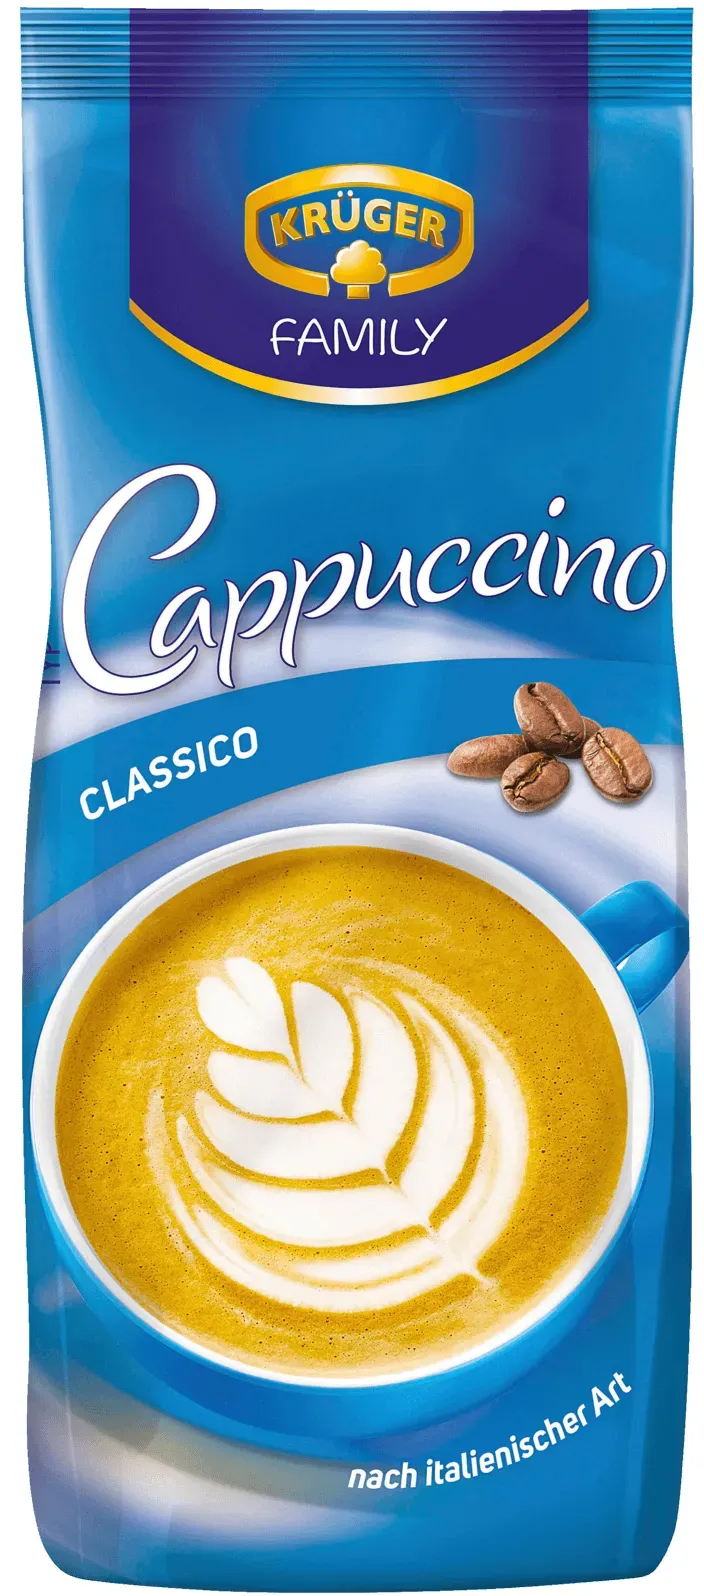 Bild von Family Cappuccino Classico 500 g